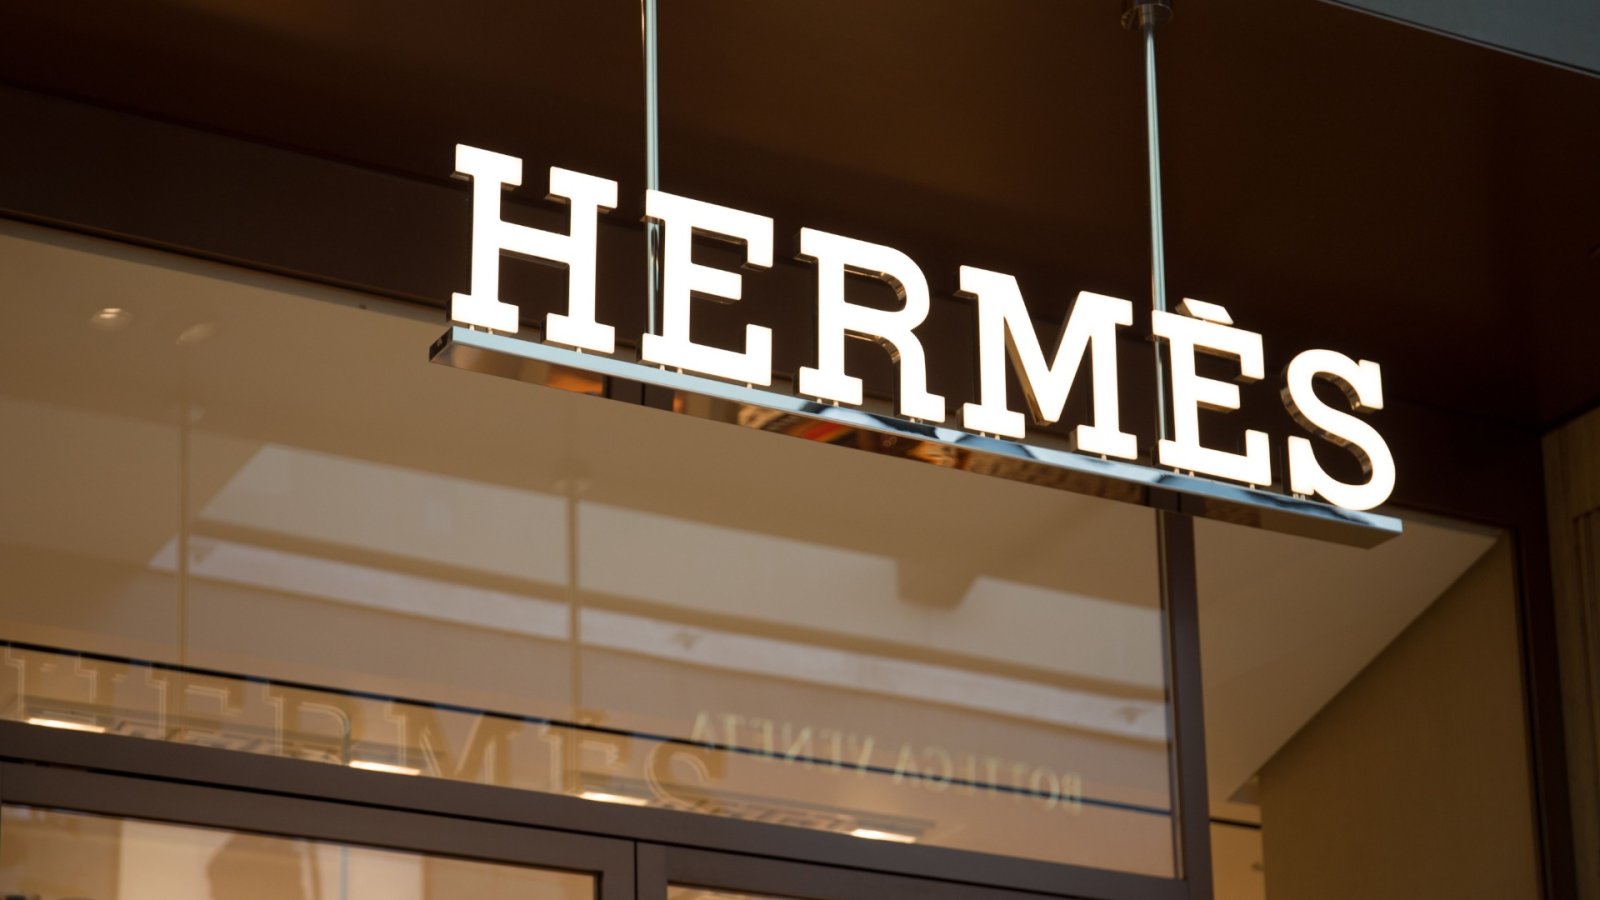 Hermès sada proizvodi satove - što kažu kolekcionari?